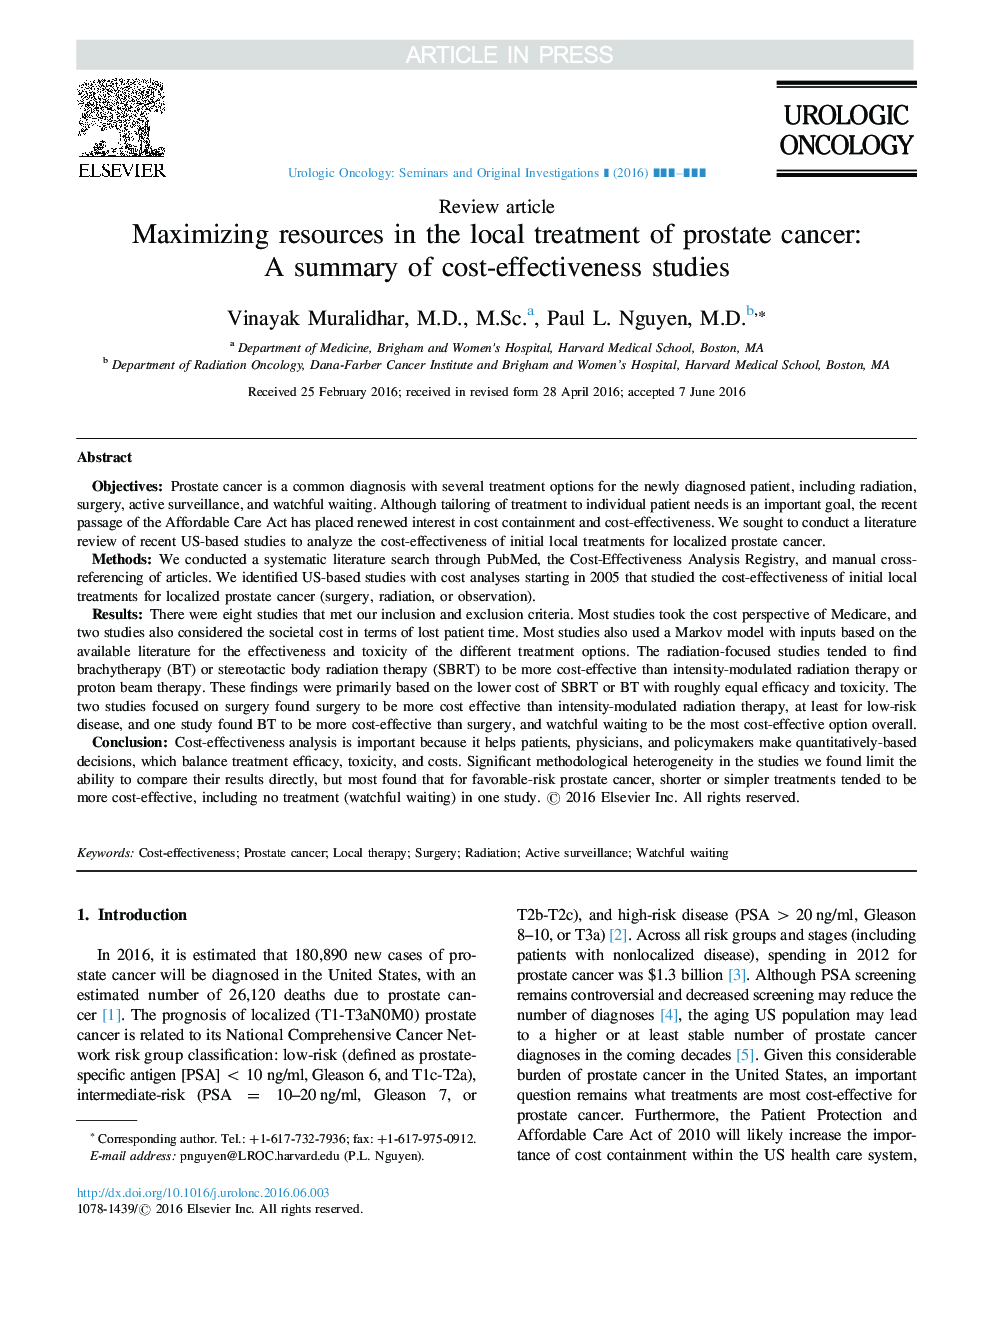 حداکثر رساندن منابع در درمان موضعی سرطان پروستات: خلاصه ای از مطالعات هزینه - اثربخشی 